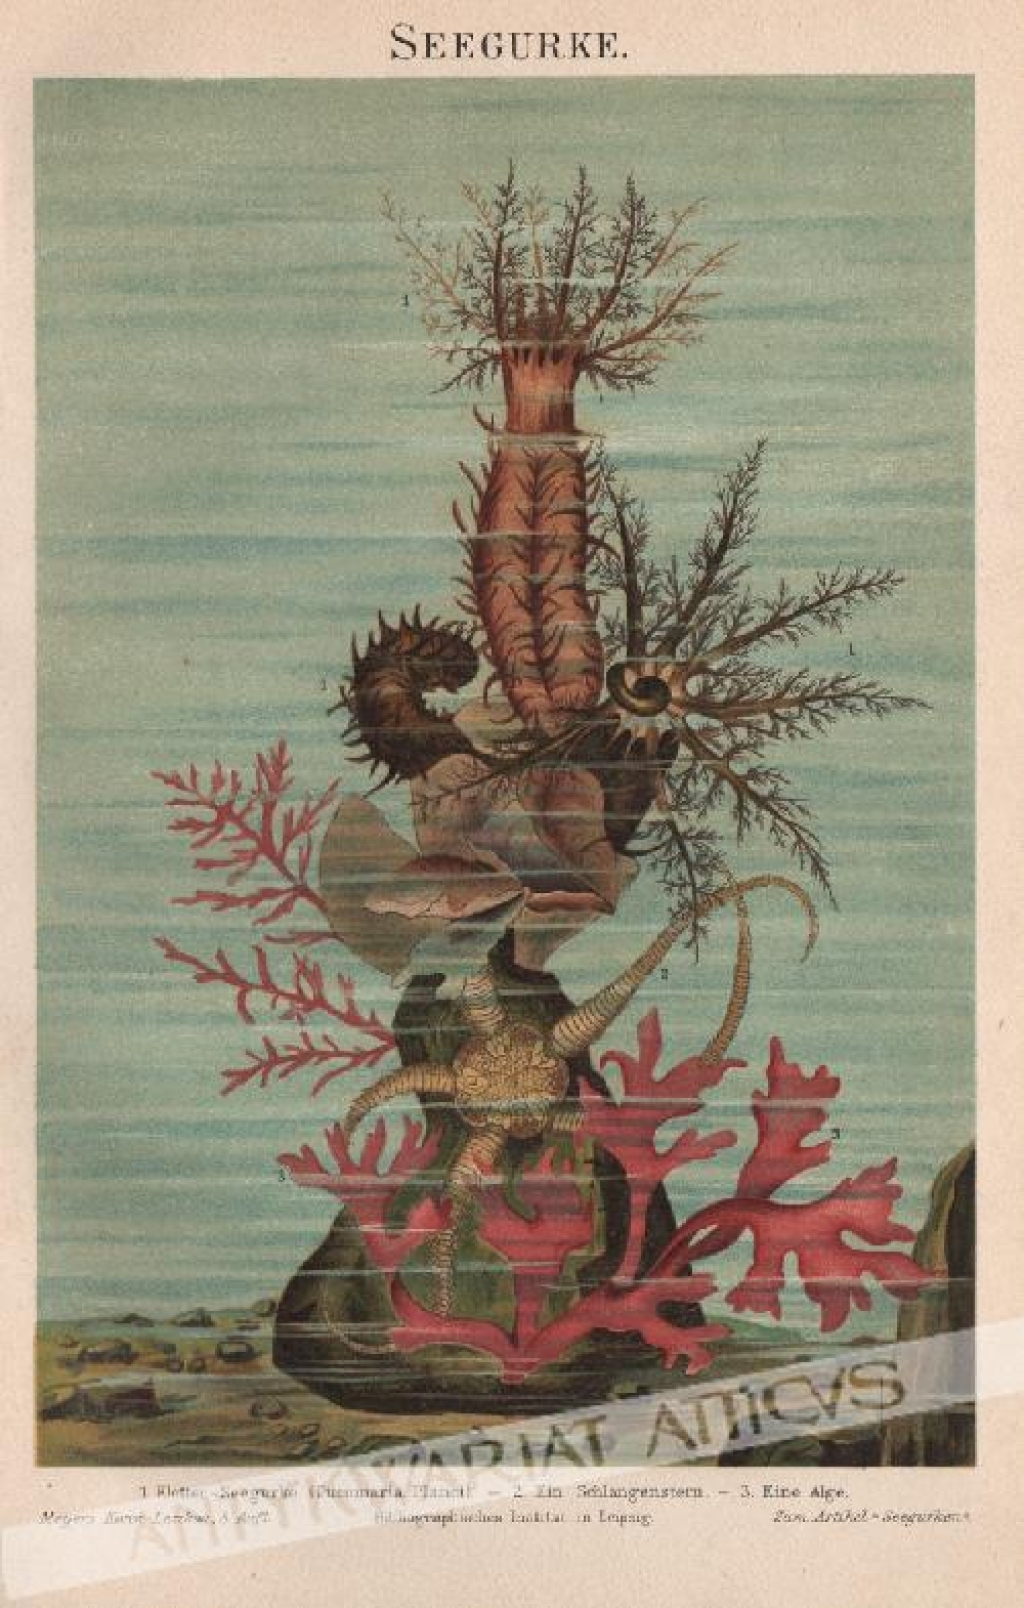 [rycina, 1897] Seegurke [Ogórki morskie - Strzykwy]